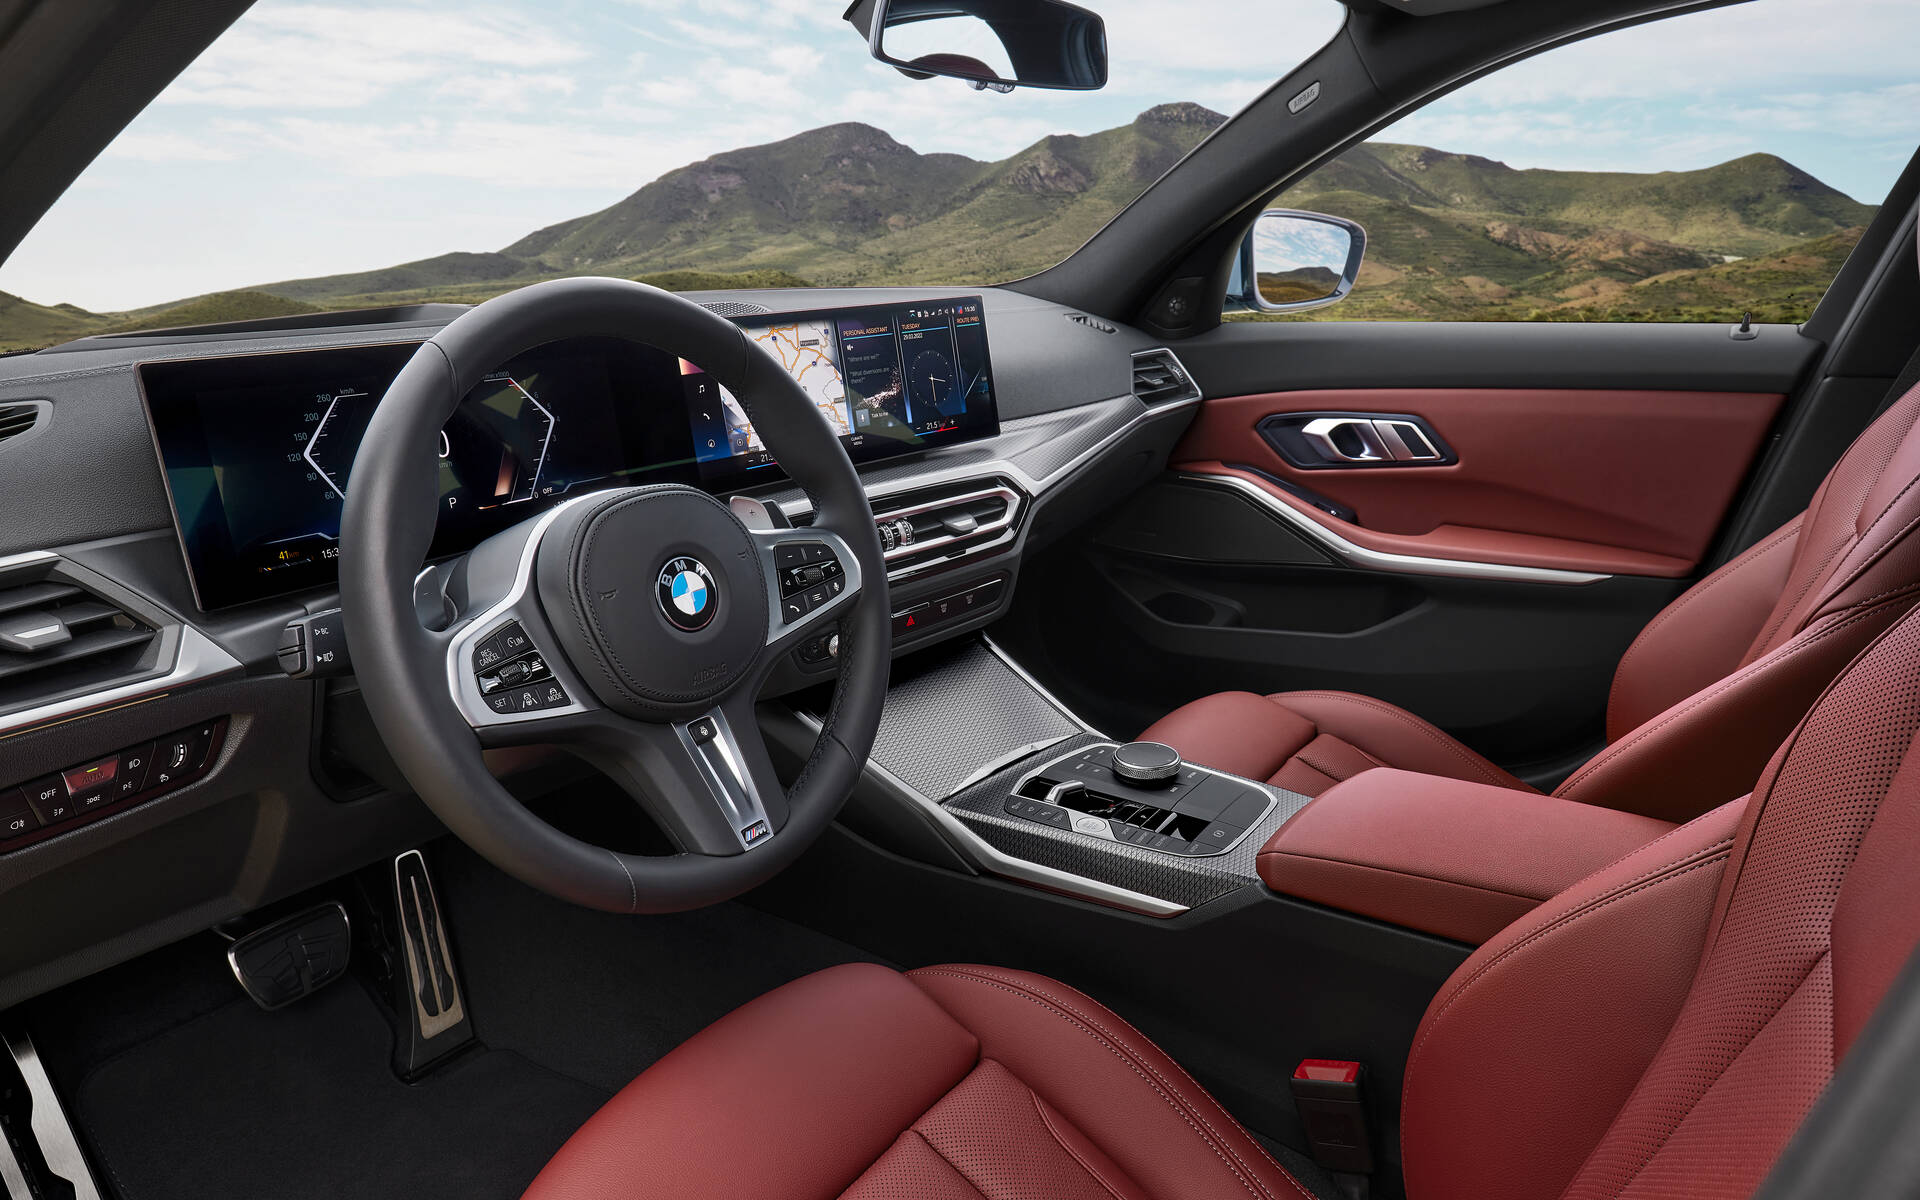 BMW : des sièges chauffants sur abonnement dans certains pays